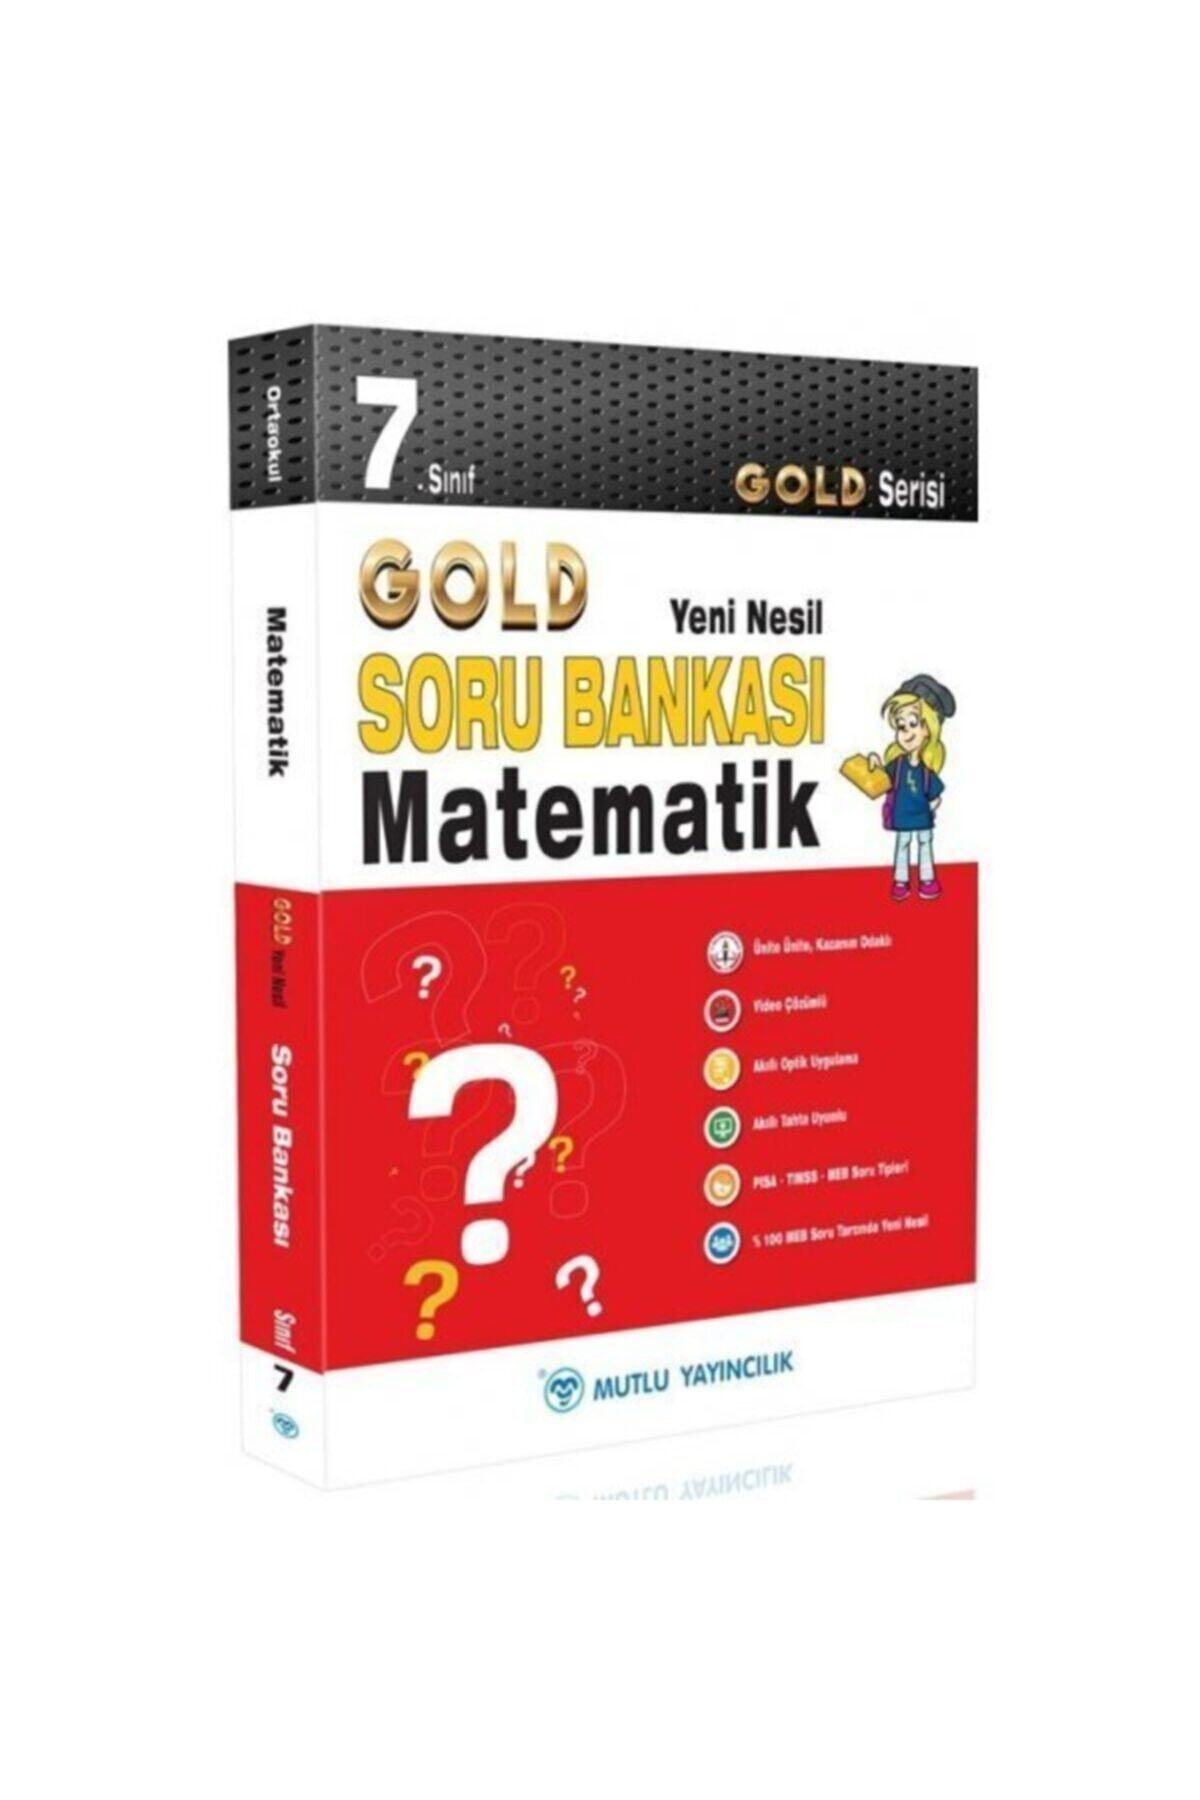 Mutlu Yayınları 7. Sınıf Matematik Gold Yeni Nesil Soru Bankası